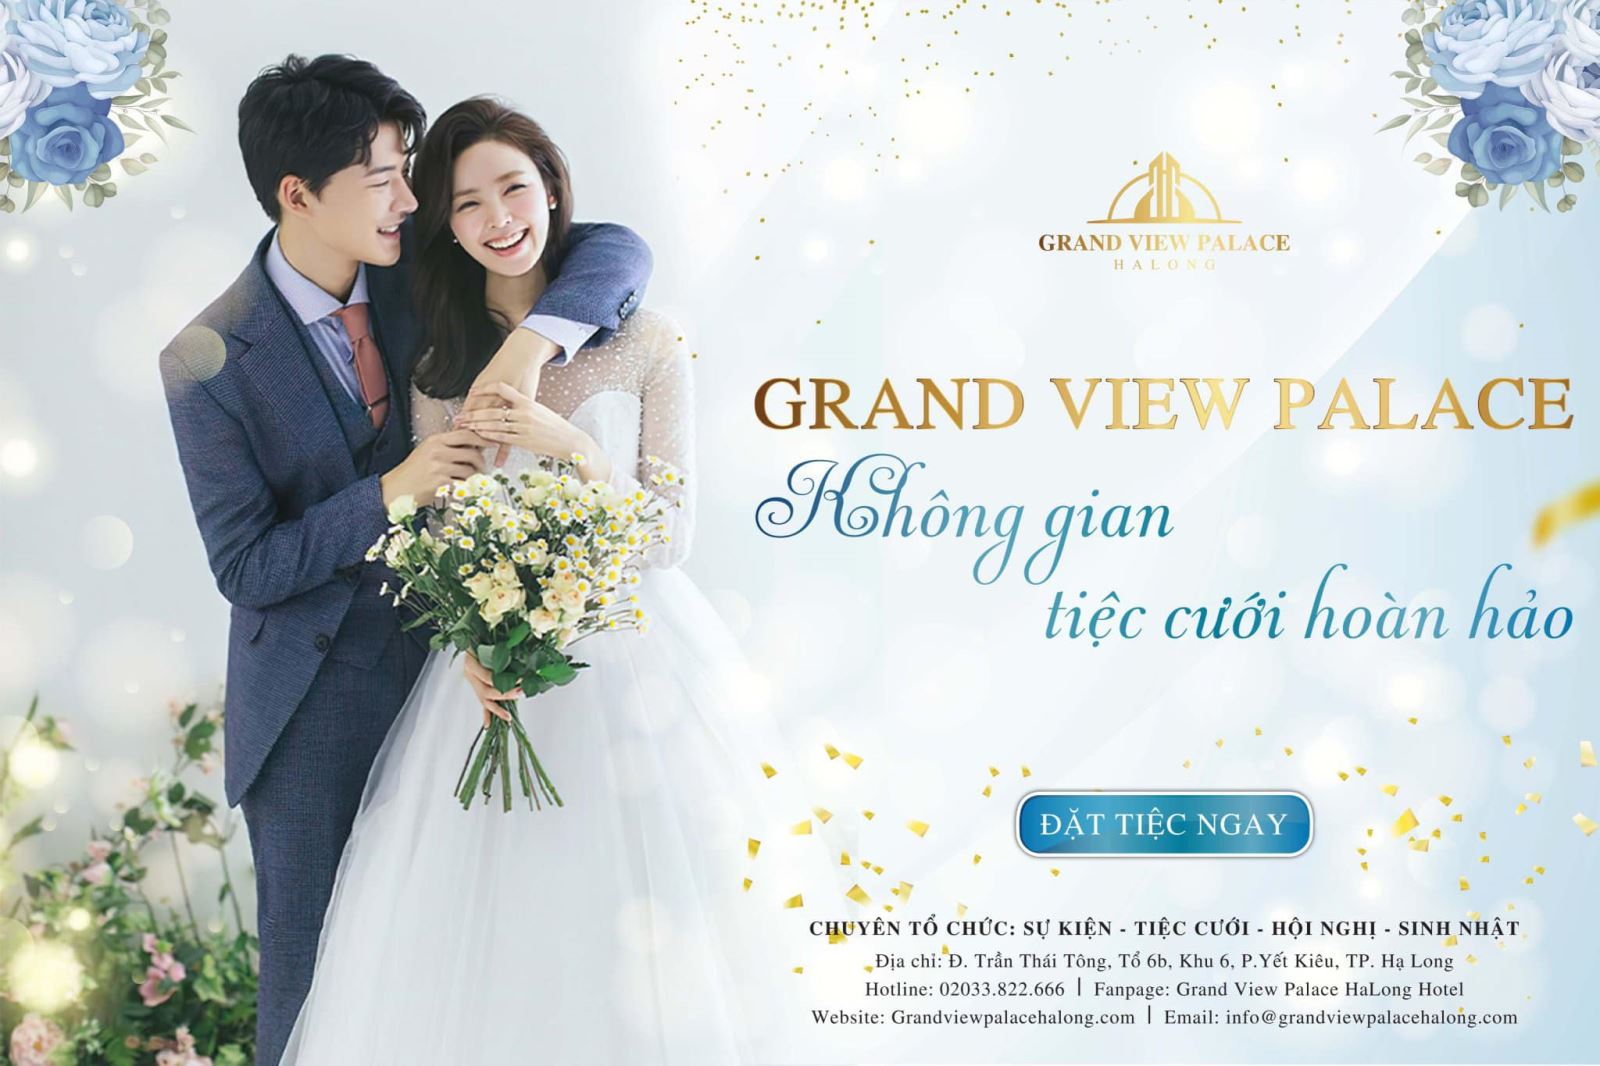 Grand View Palace - Không gian tiệc cưới hoàn hảo